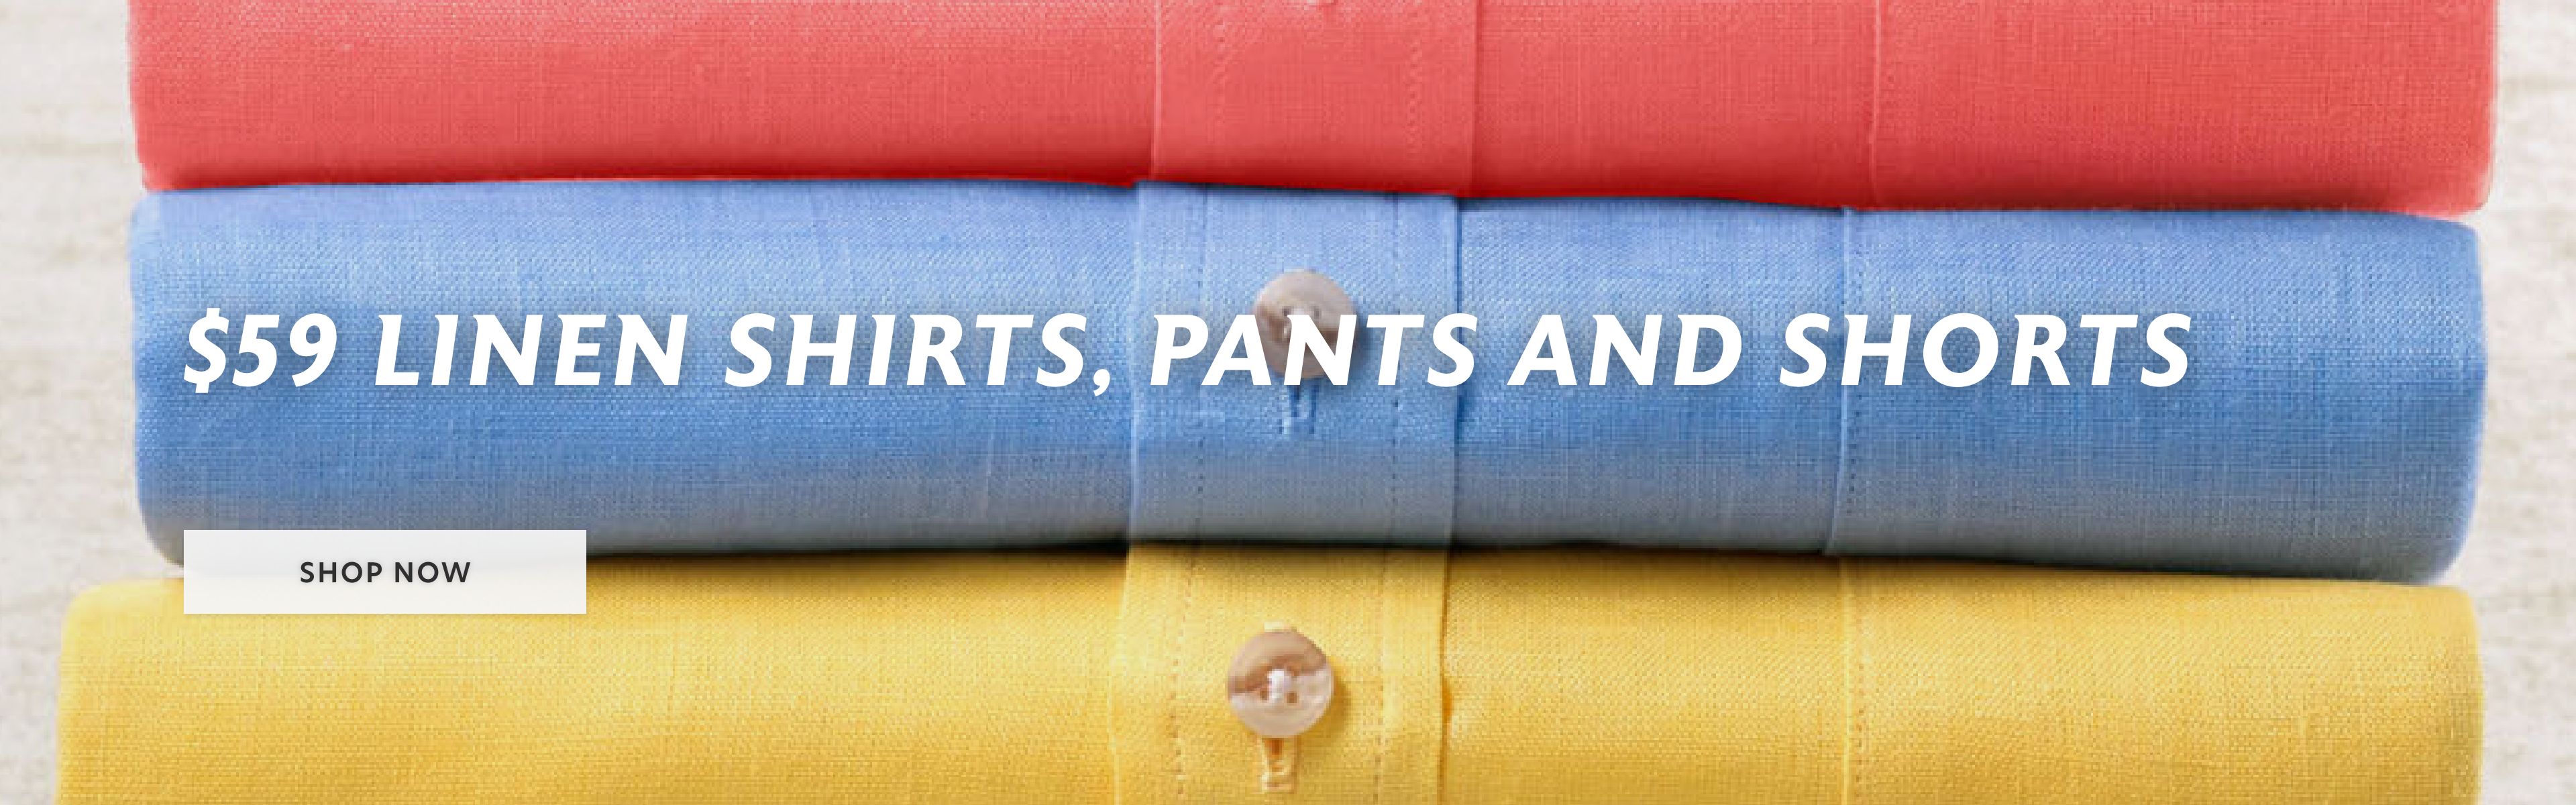 $59 linen shirts, pants and shorts 